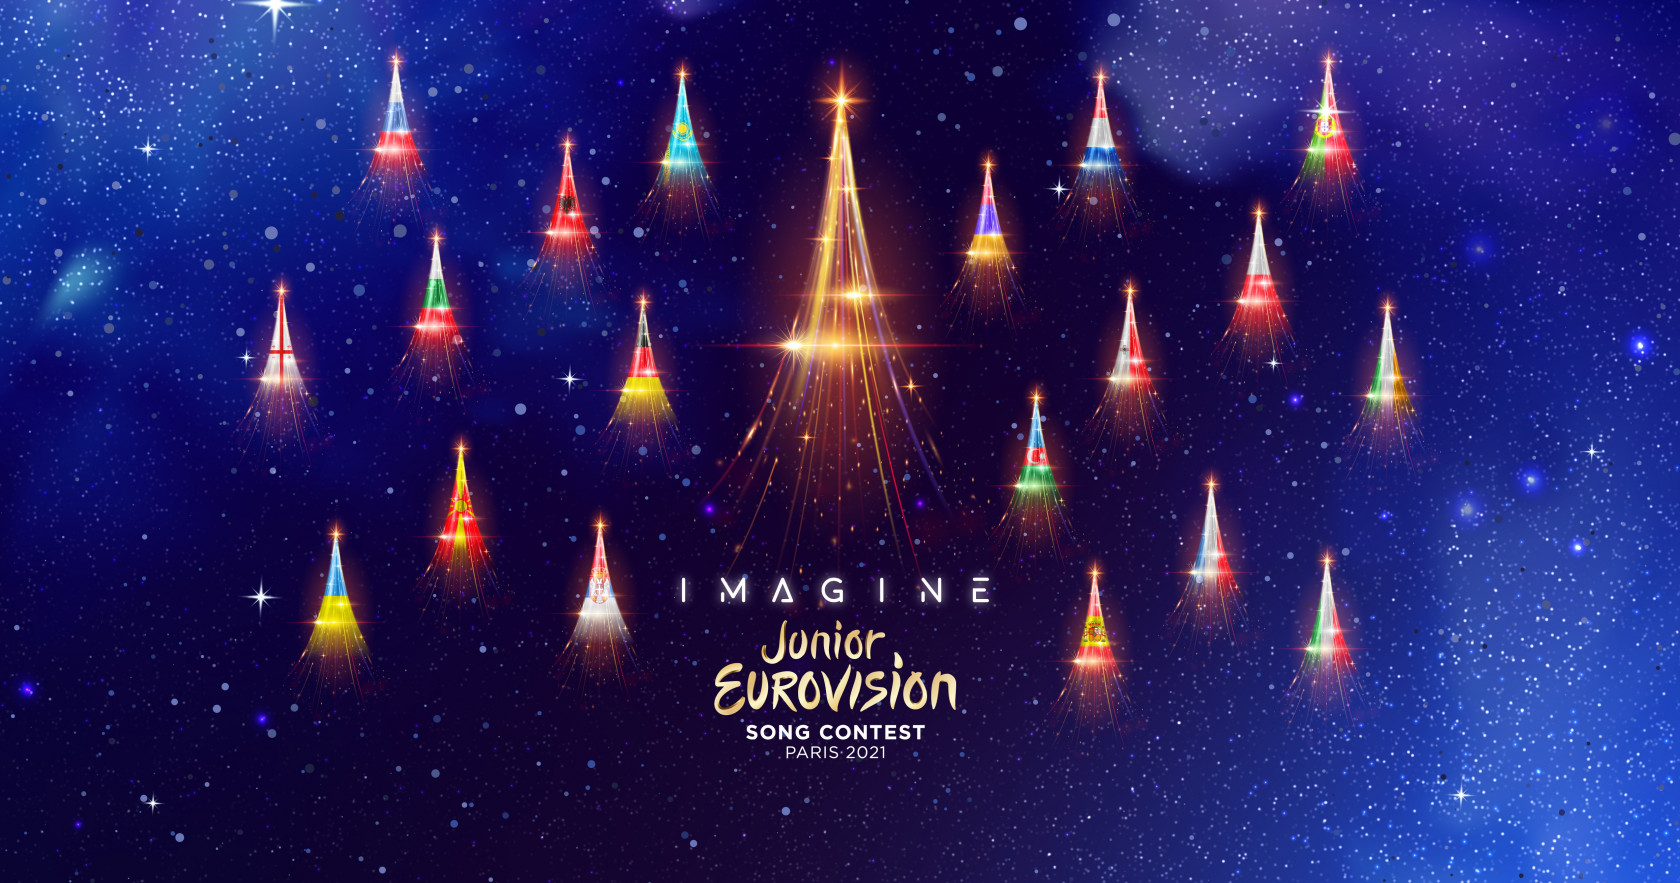 INFE GREECE POLL: Ψηφίστε τα αγαπημένα σας τραγούδια από την Junior Eurovision 2021